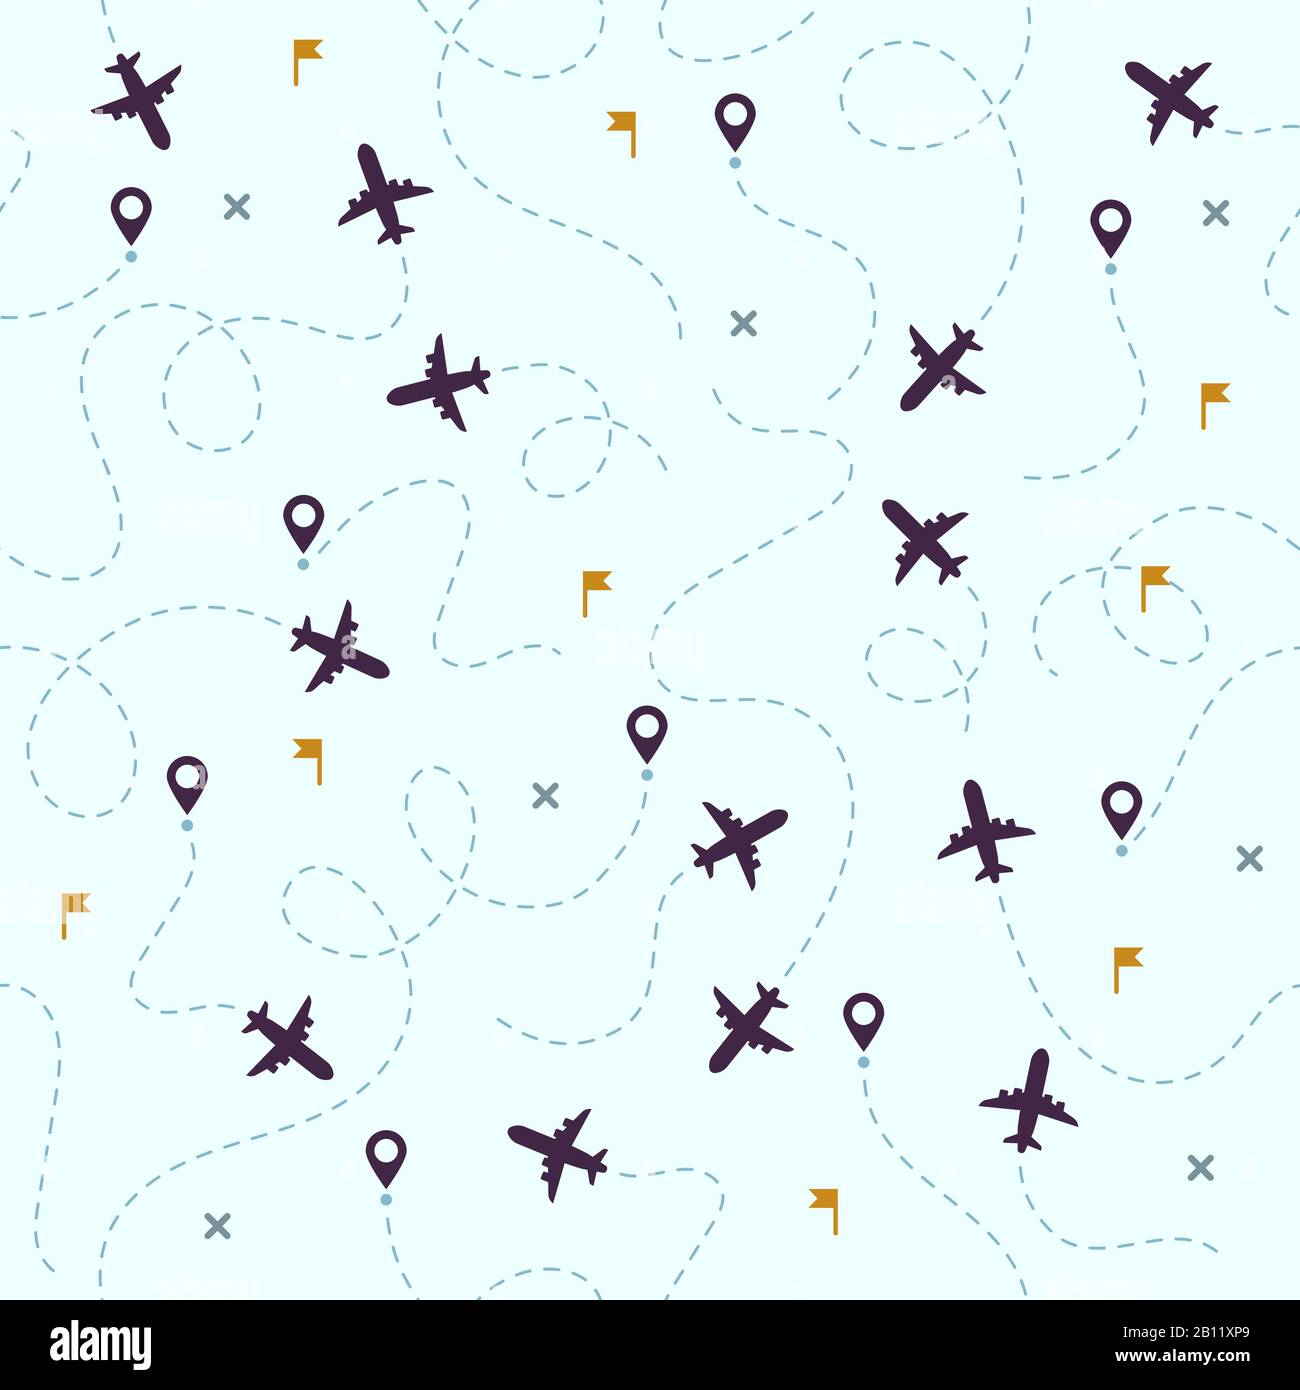 Flugmuster. Flugzeugreisen, avia-Routen und Flugvektor nahtloser Hintergrund Stock Vektor